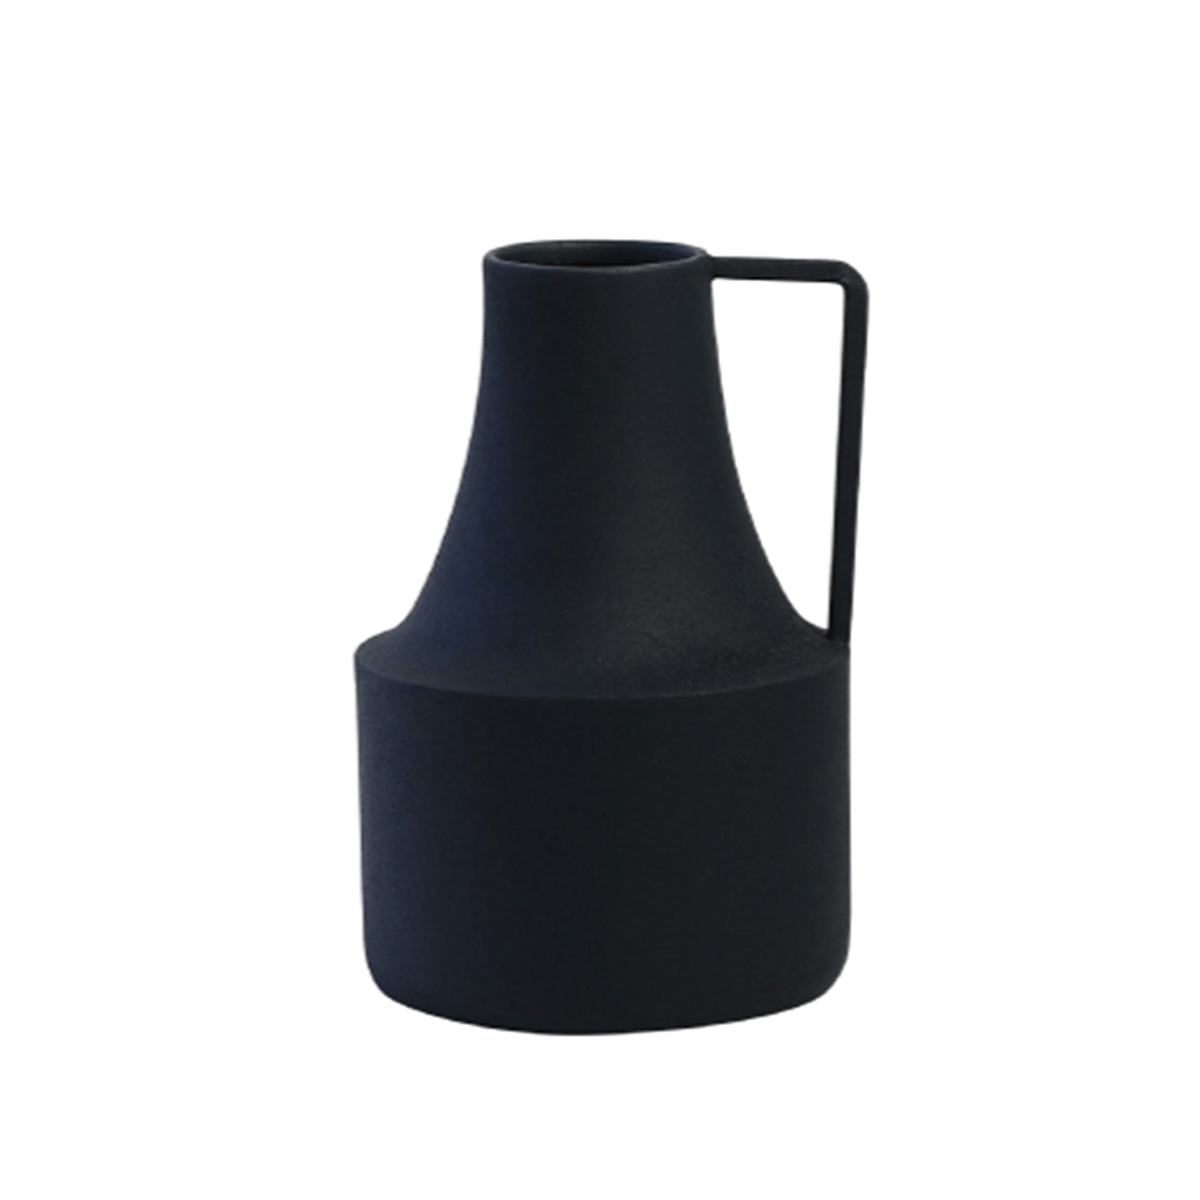 Iron Flower Vase Dolce / アイロンフラワーベース ドルチェ